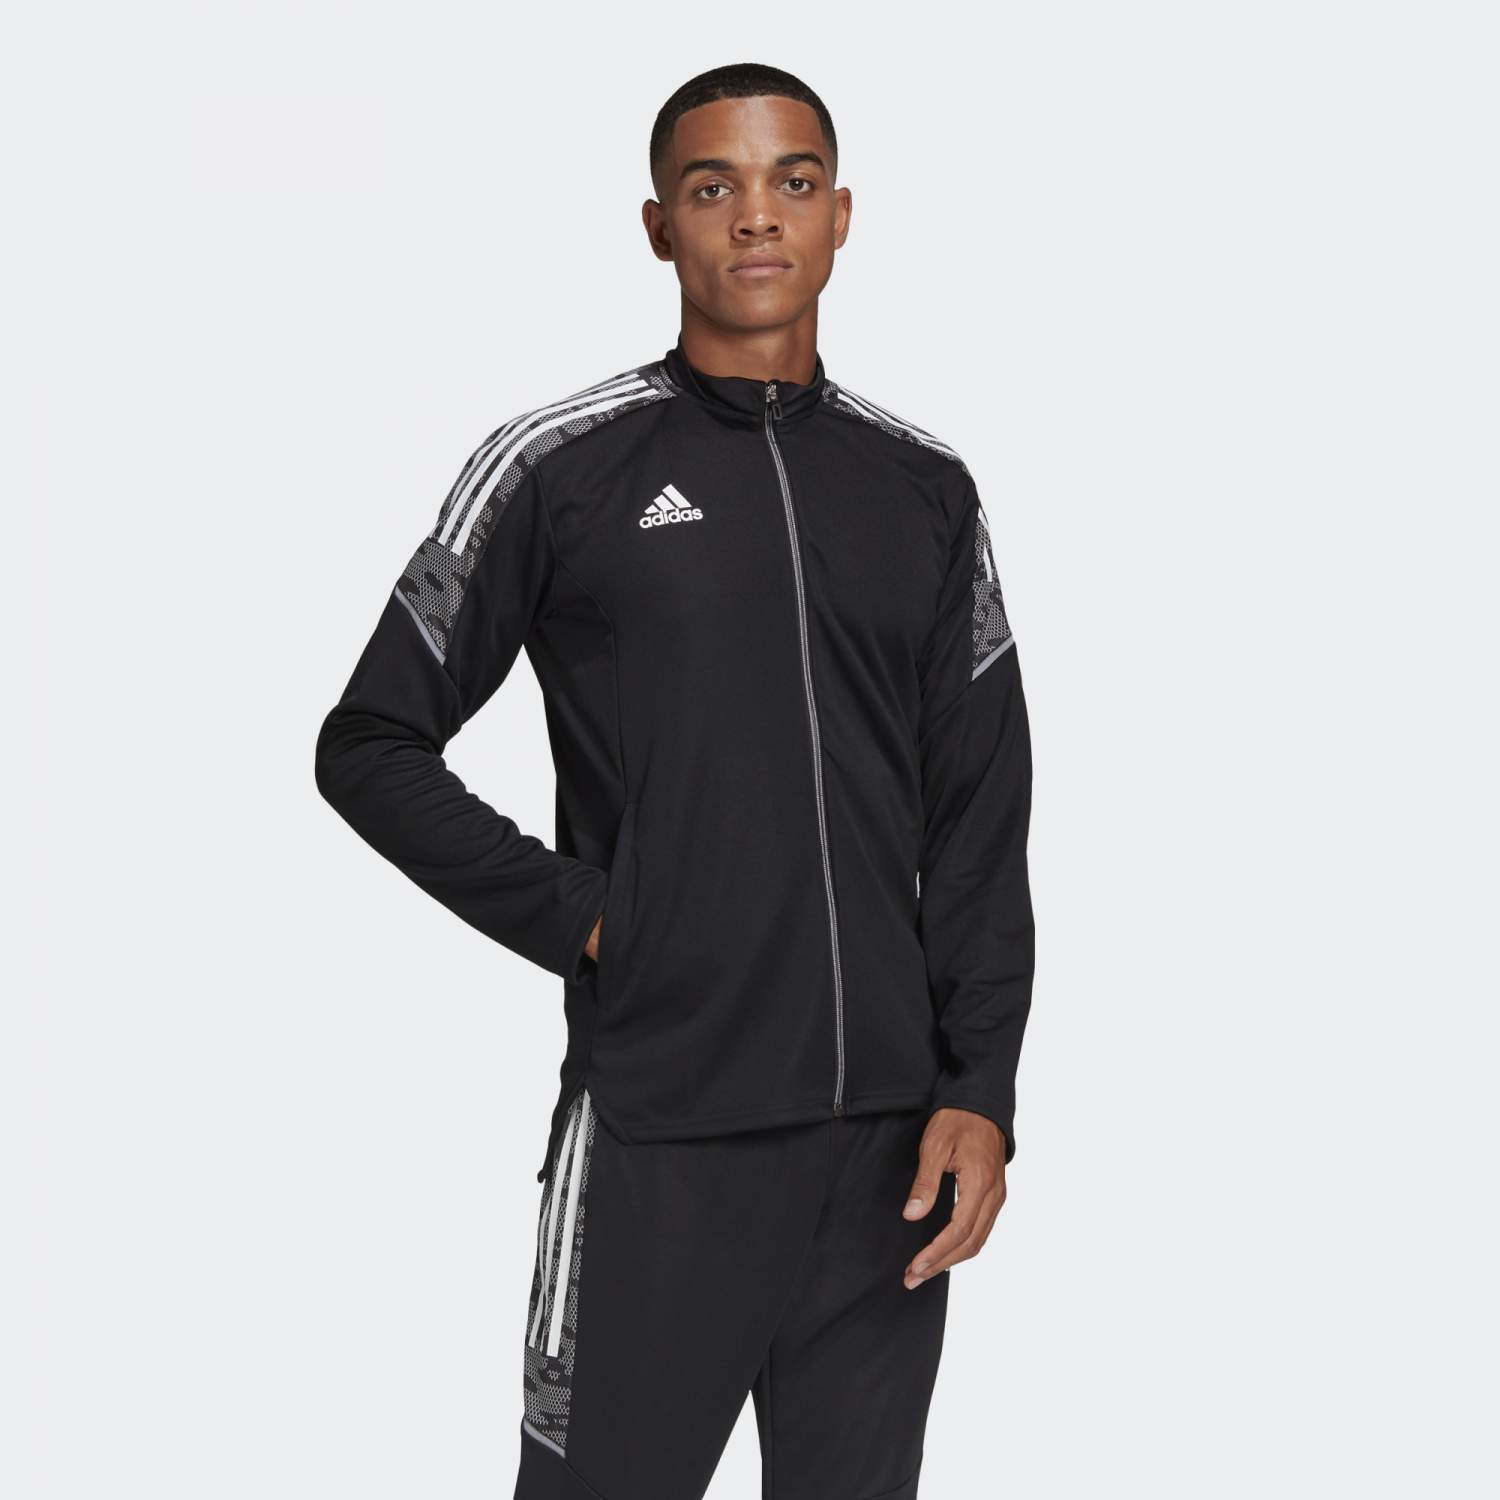 Олимпийка мужская Adidas GH7129 черная S - купить в Москве, цены наМегамаркет